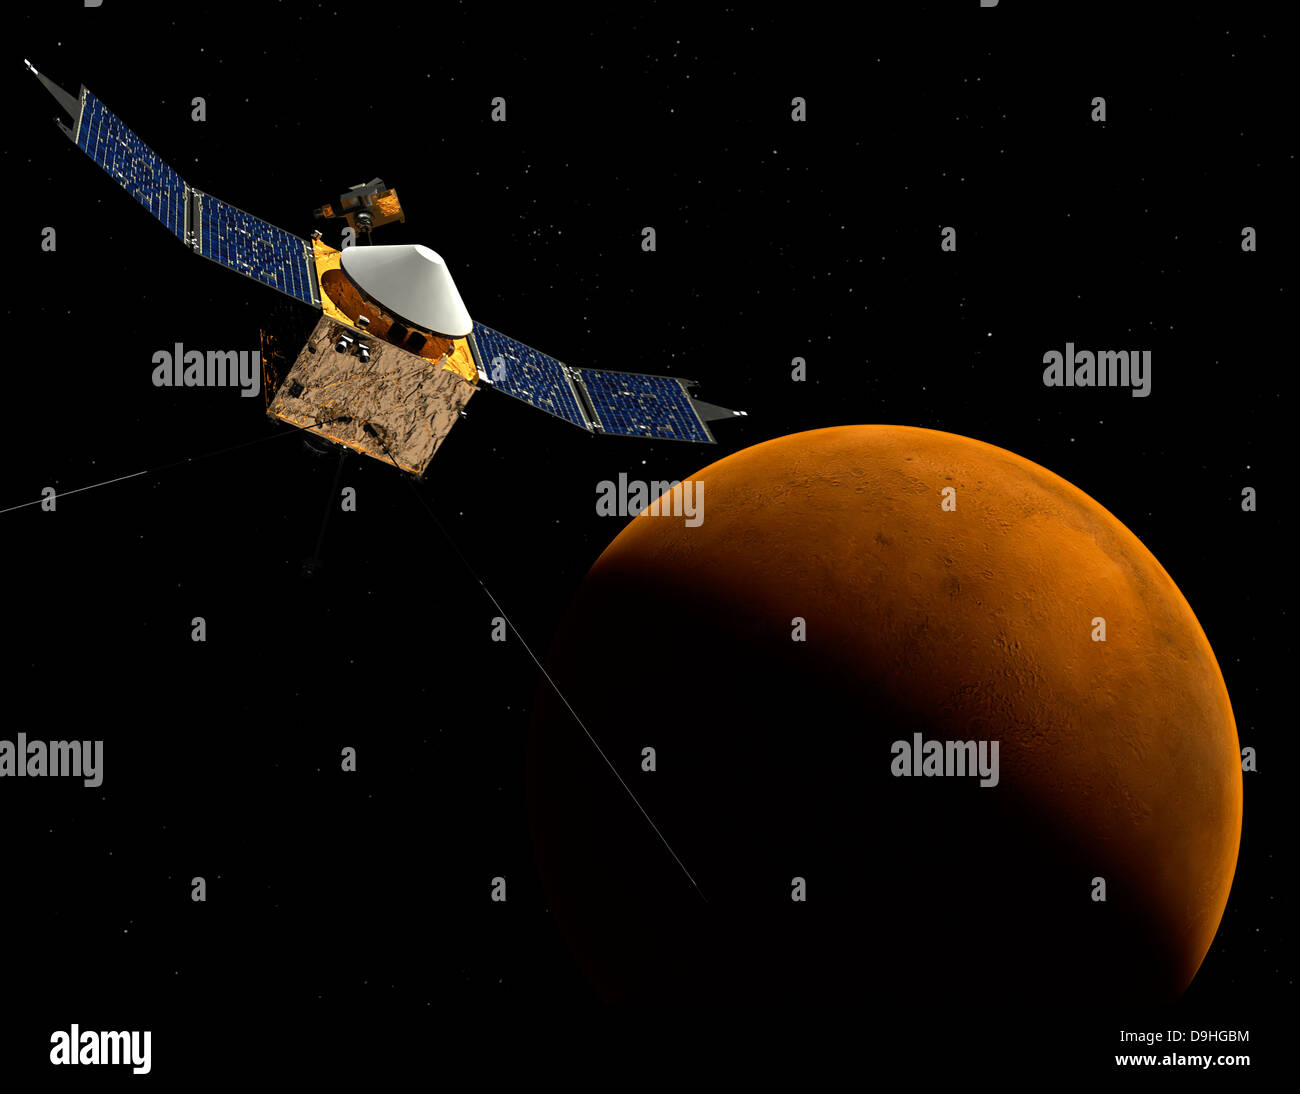 Künstlers Konzept von MAVEN-Raumsonde der NASA. Stockfoto